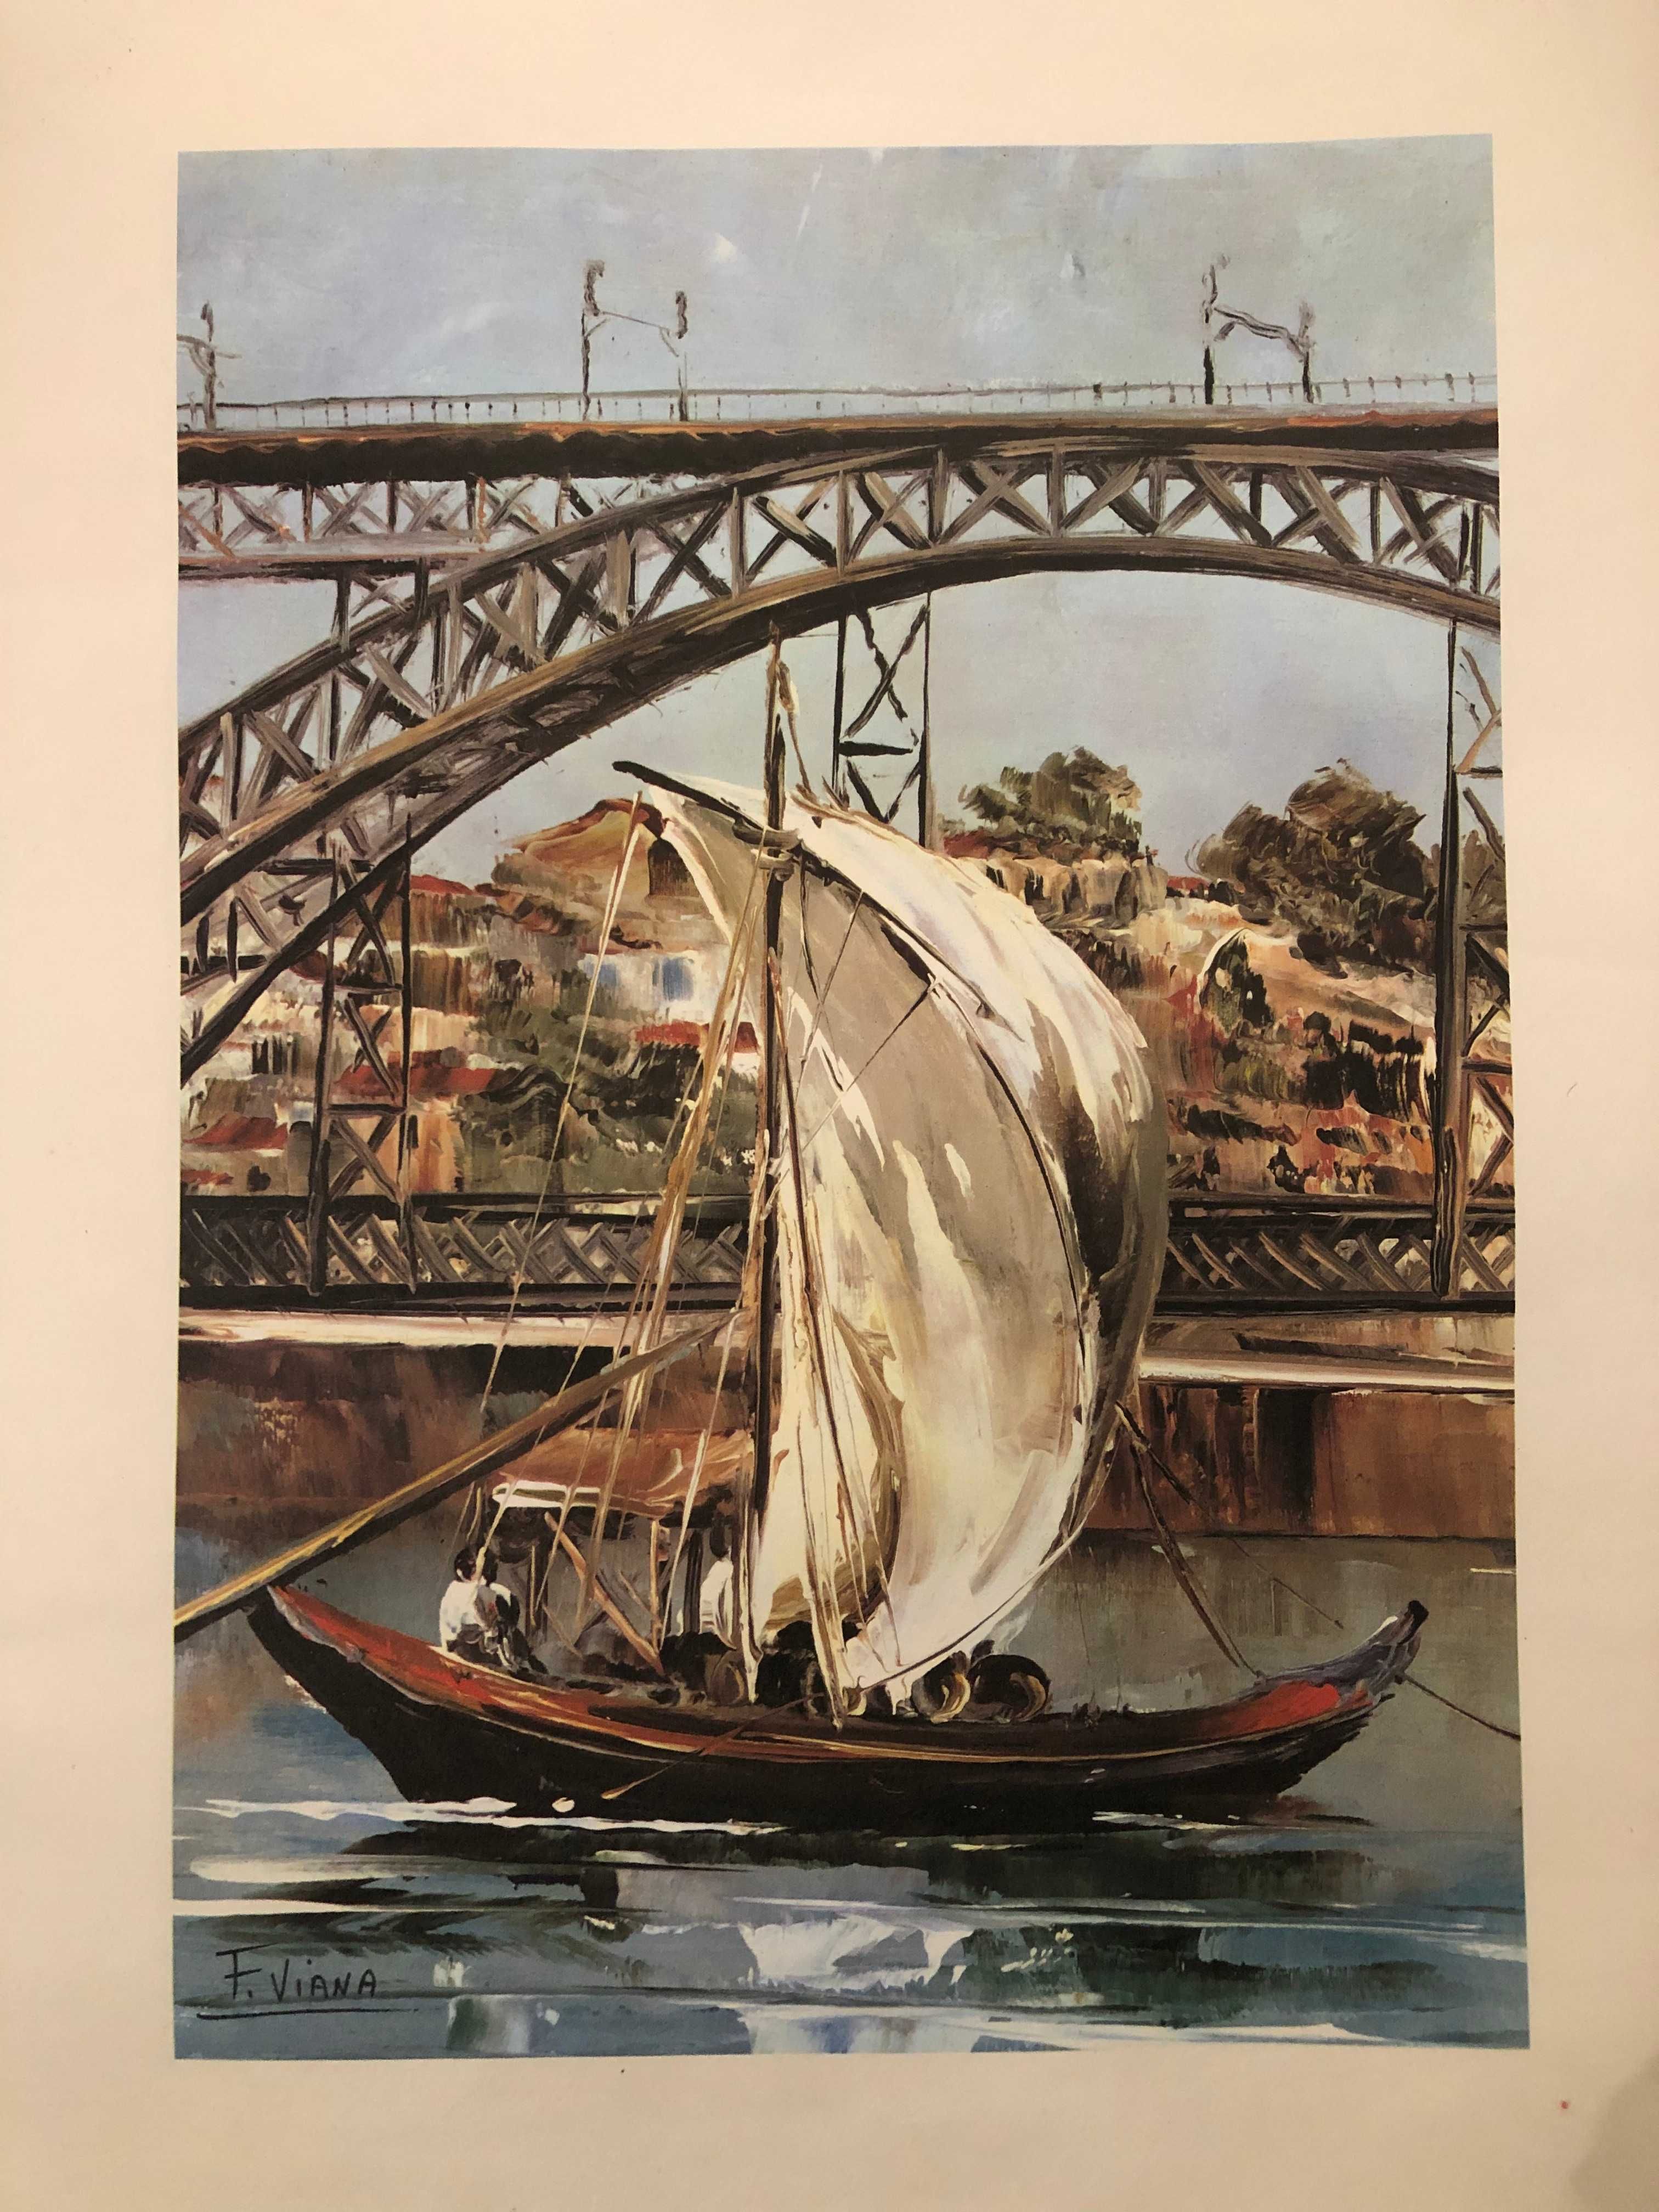 Reprodução pintura Francisco Viana (sem moldura) barco rabelo no Porto